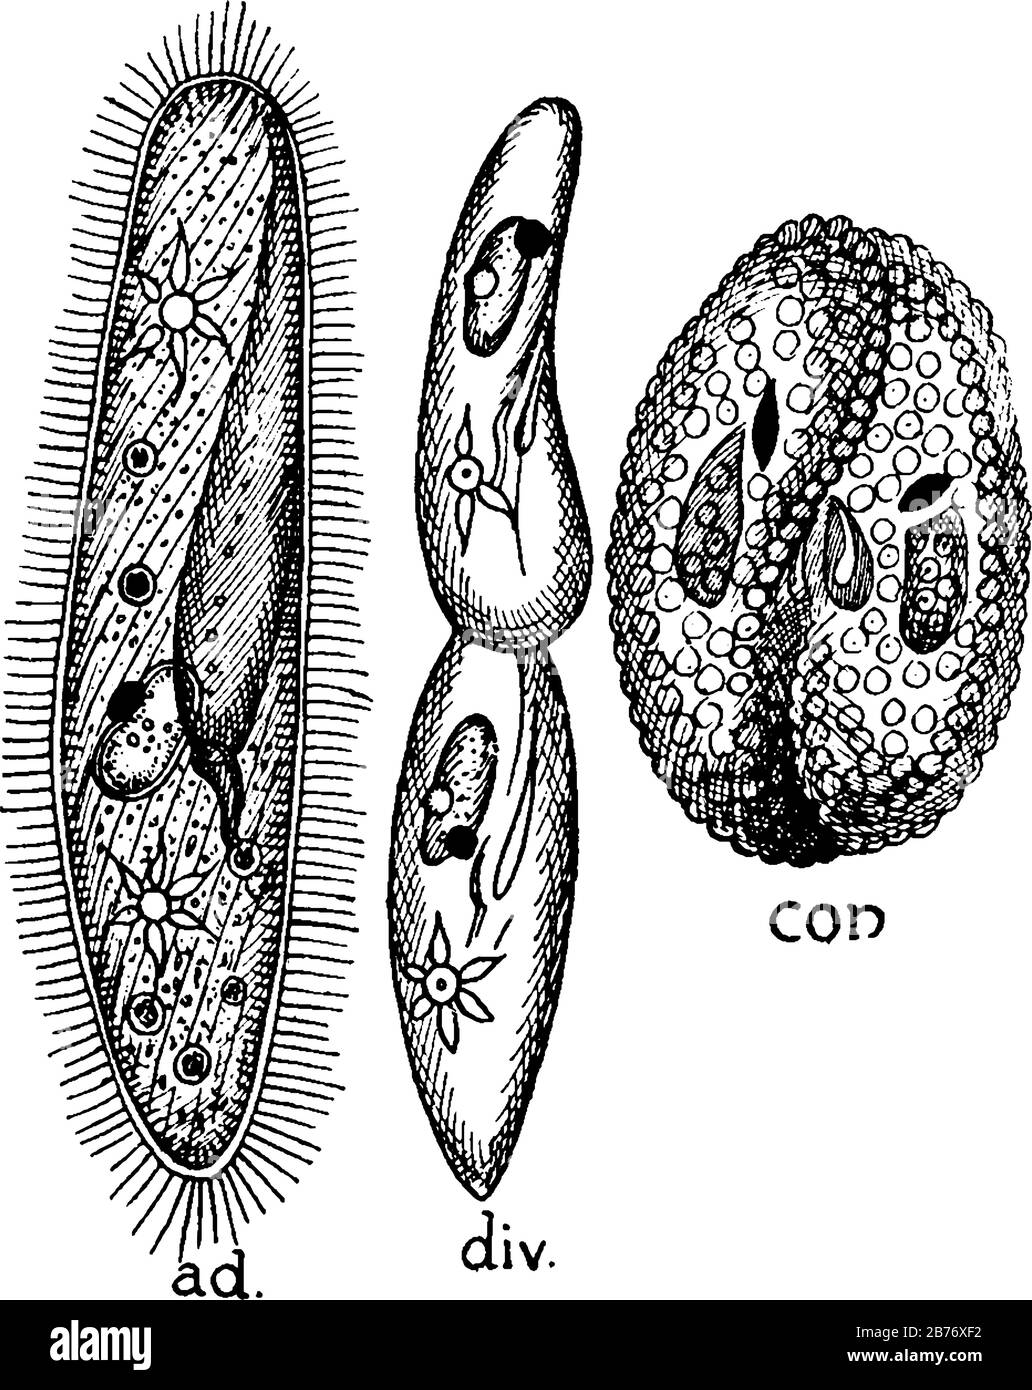 Paramoecium, ad, forma adulta, mostrando cilios, boca, vacuolas contráctiles, etc.; div, división transversal y con, conjugación, dibujo de línea vintage o. Ilustración del Vector